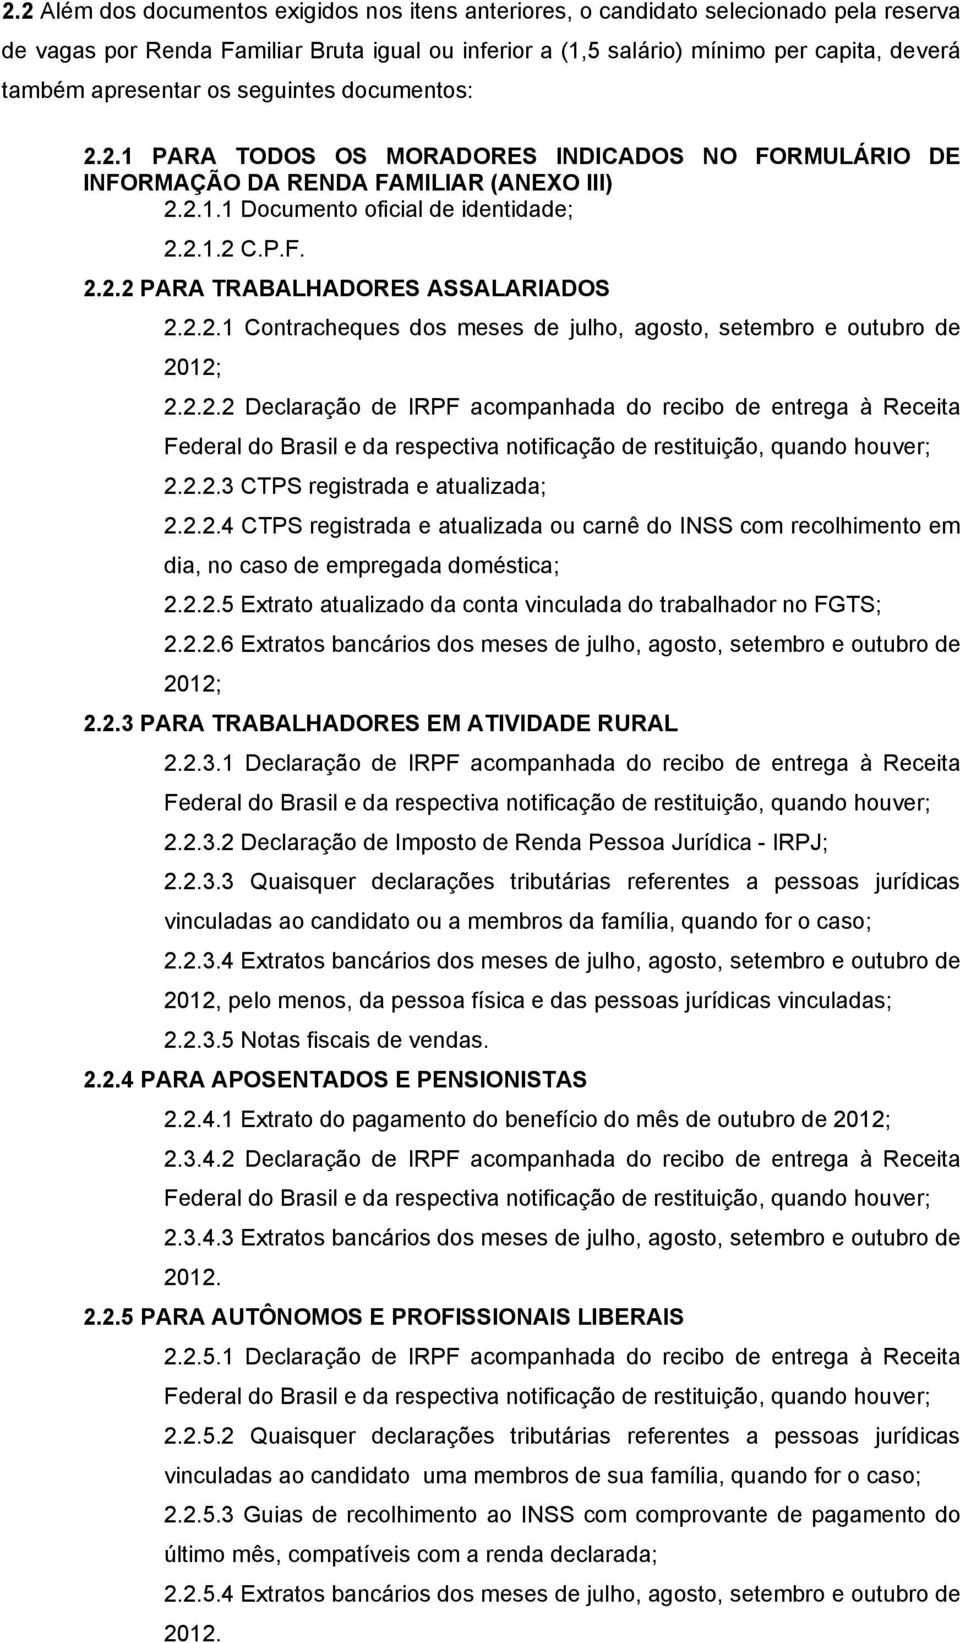 2.2.1 Contracheques dos meses de julho, agosto, setembro e outubro de 2012; 2.2.2.2 Declaração de IRPF acompanhada do recibo de entrega à Receita Federal do Brasil e da respectiva notificação de restituição, quando houver; 2.